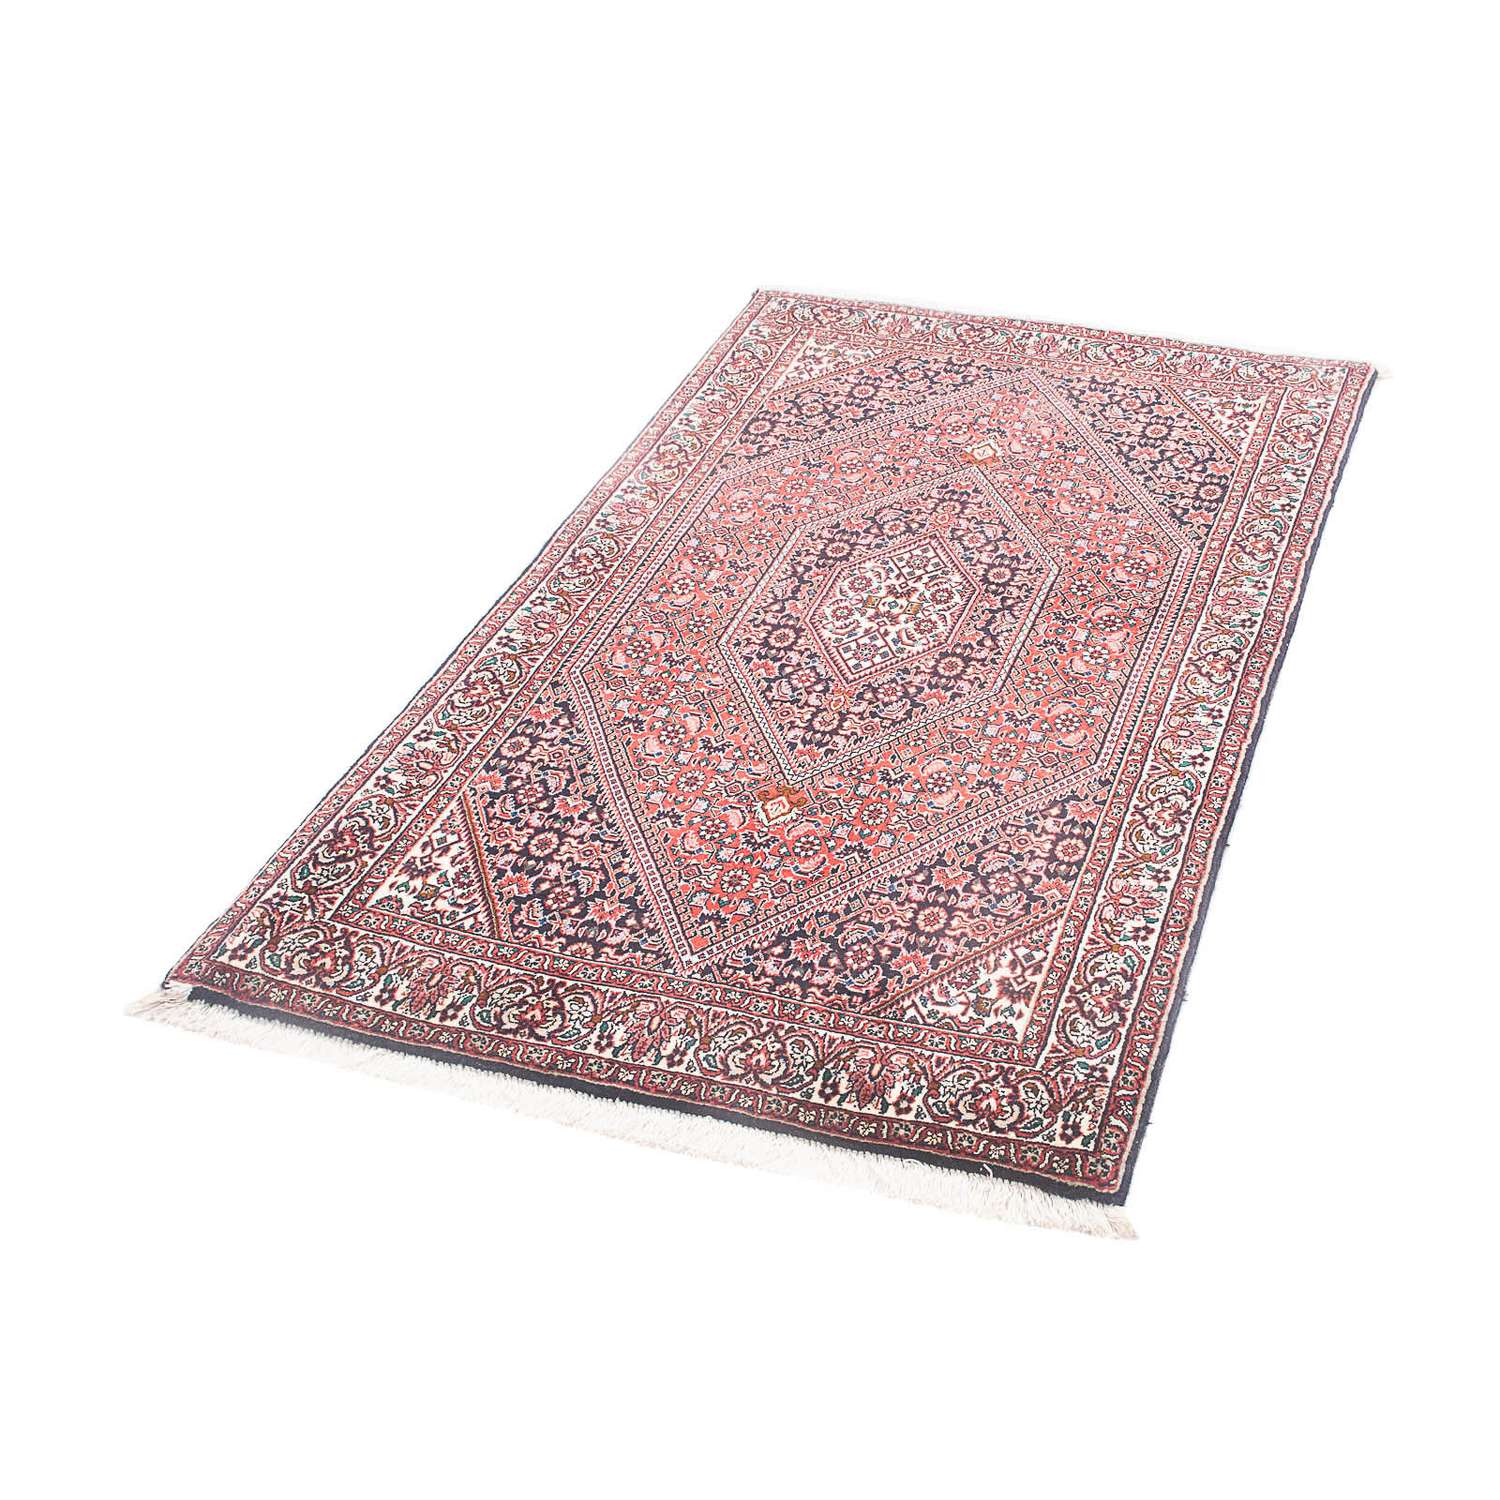 Persisk matta - Bijar - 151 x 86 cm - ljusröd